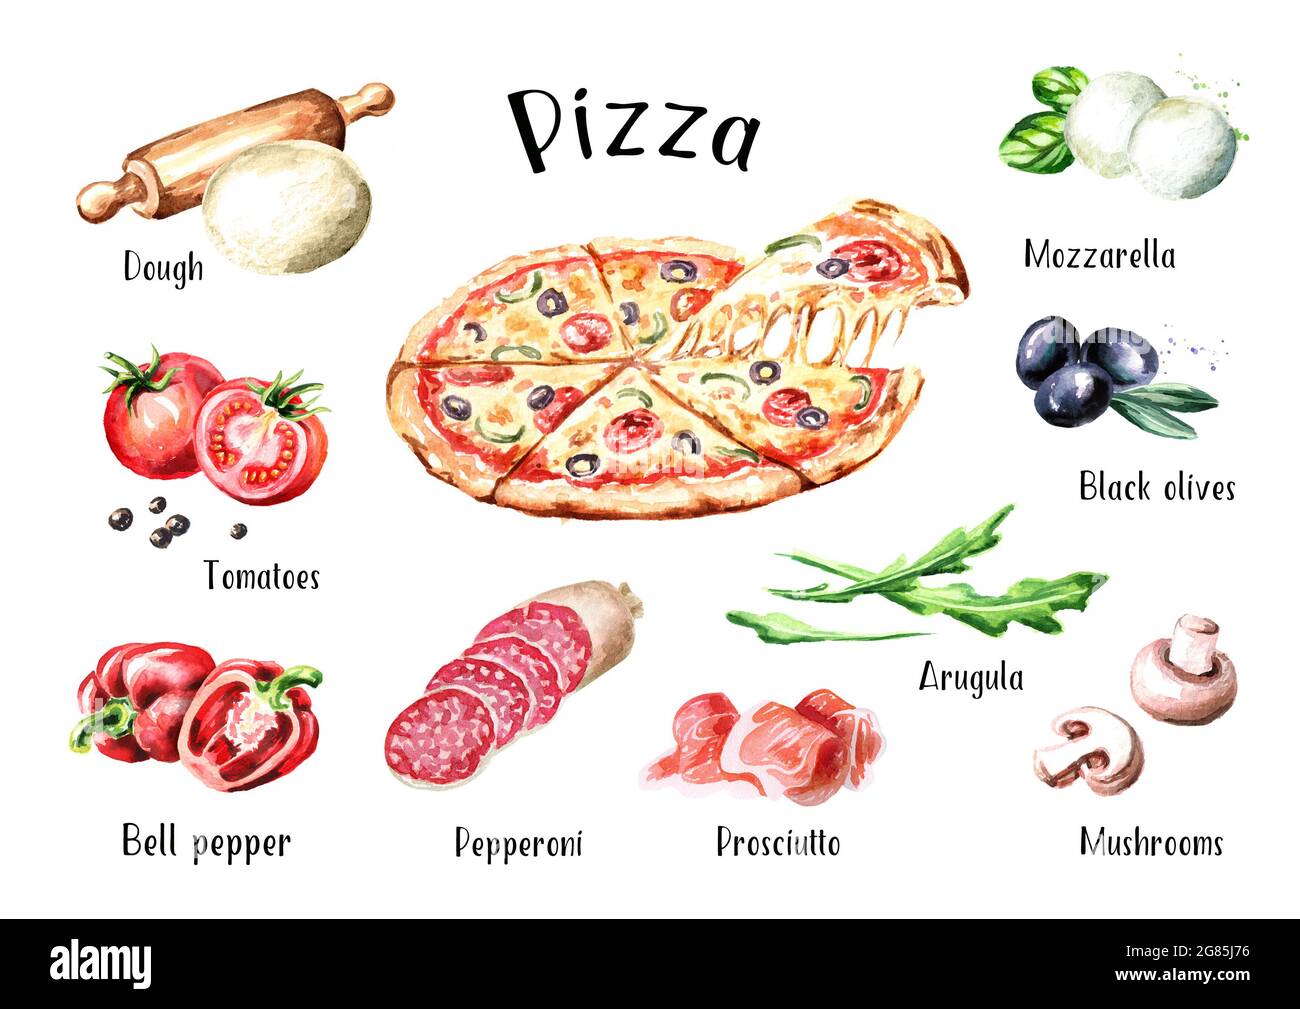 список ингредиентов для пиццы пепперони фото 116